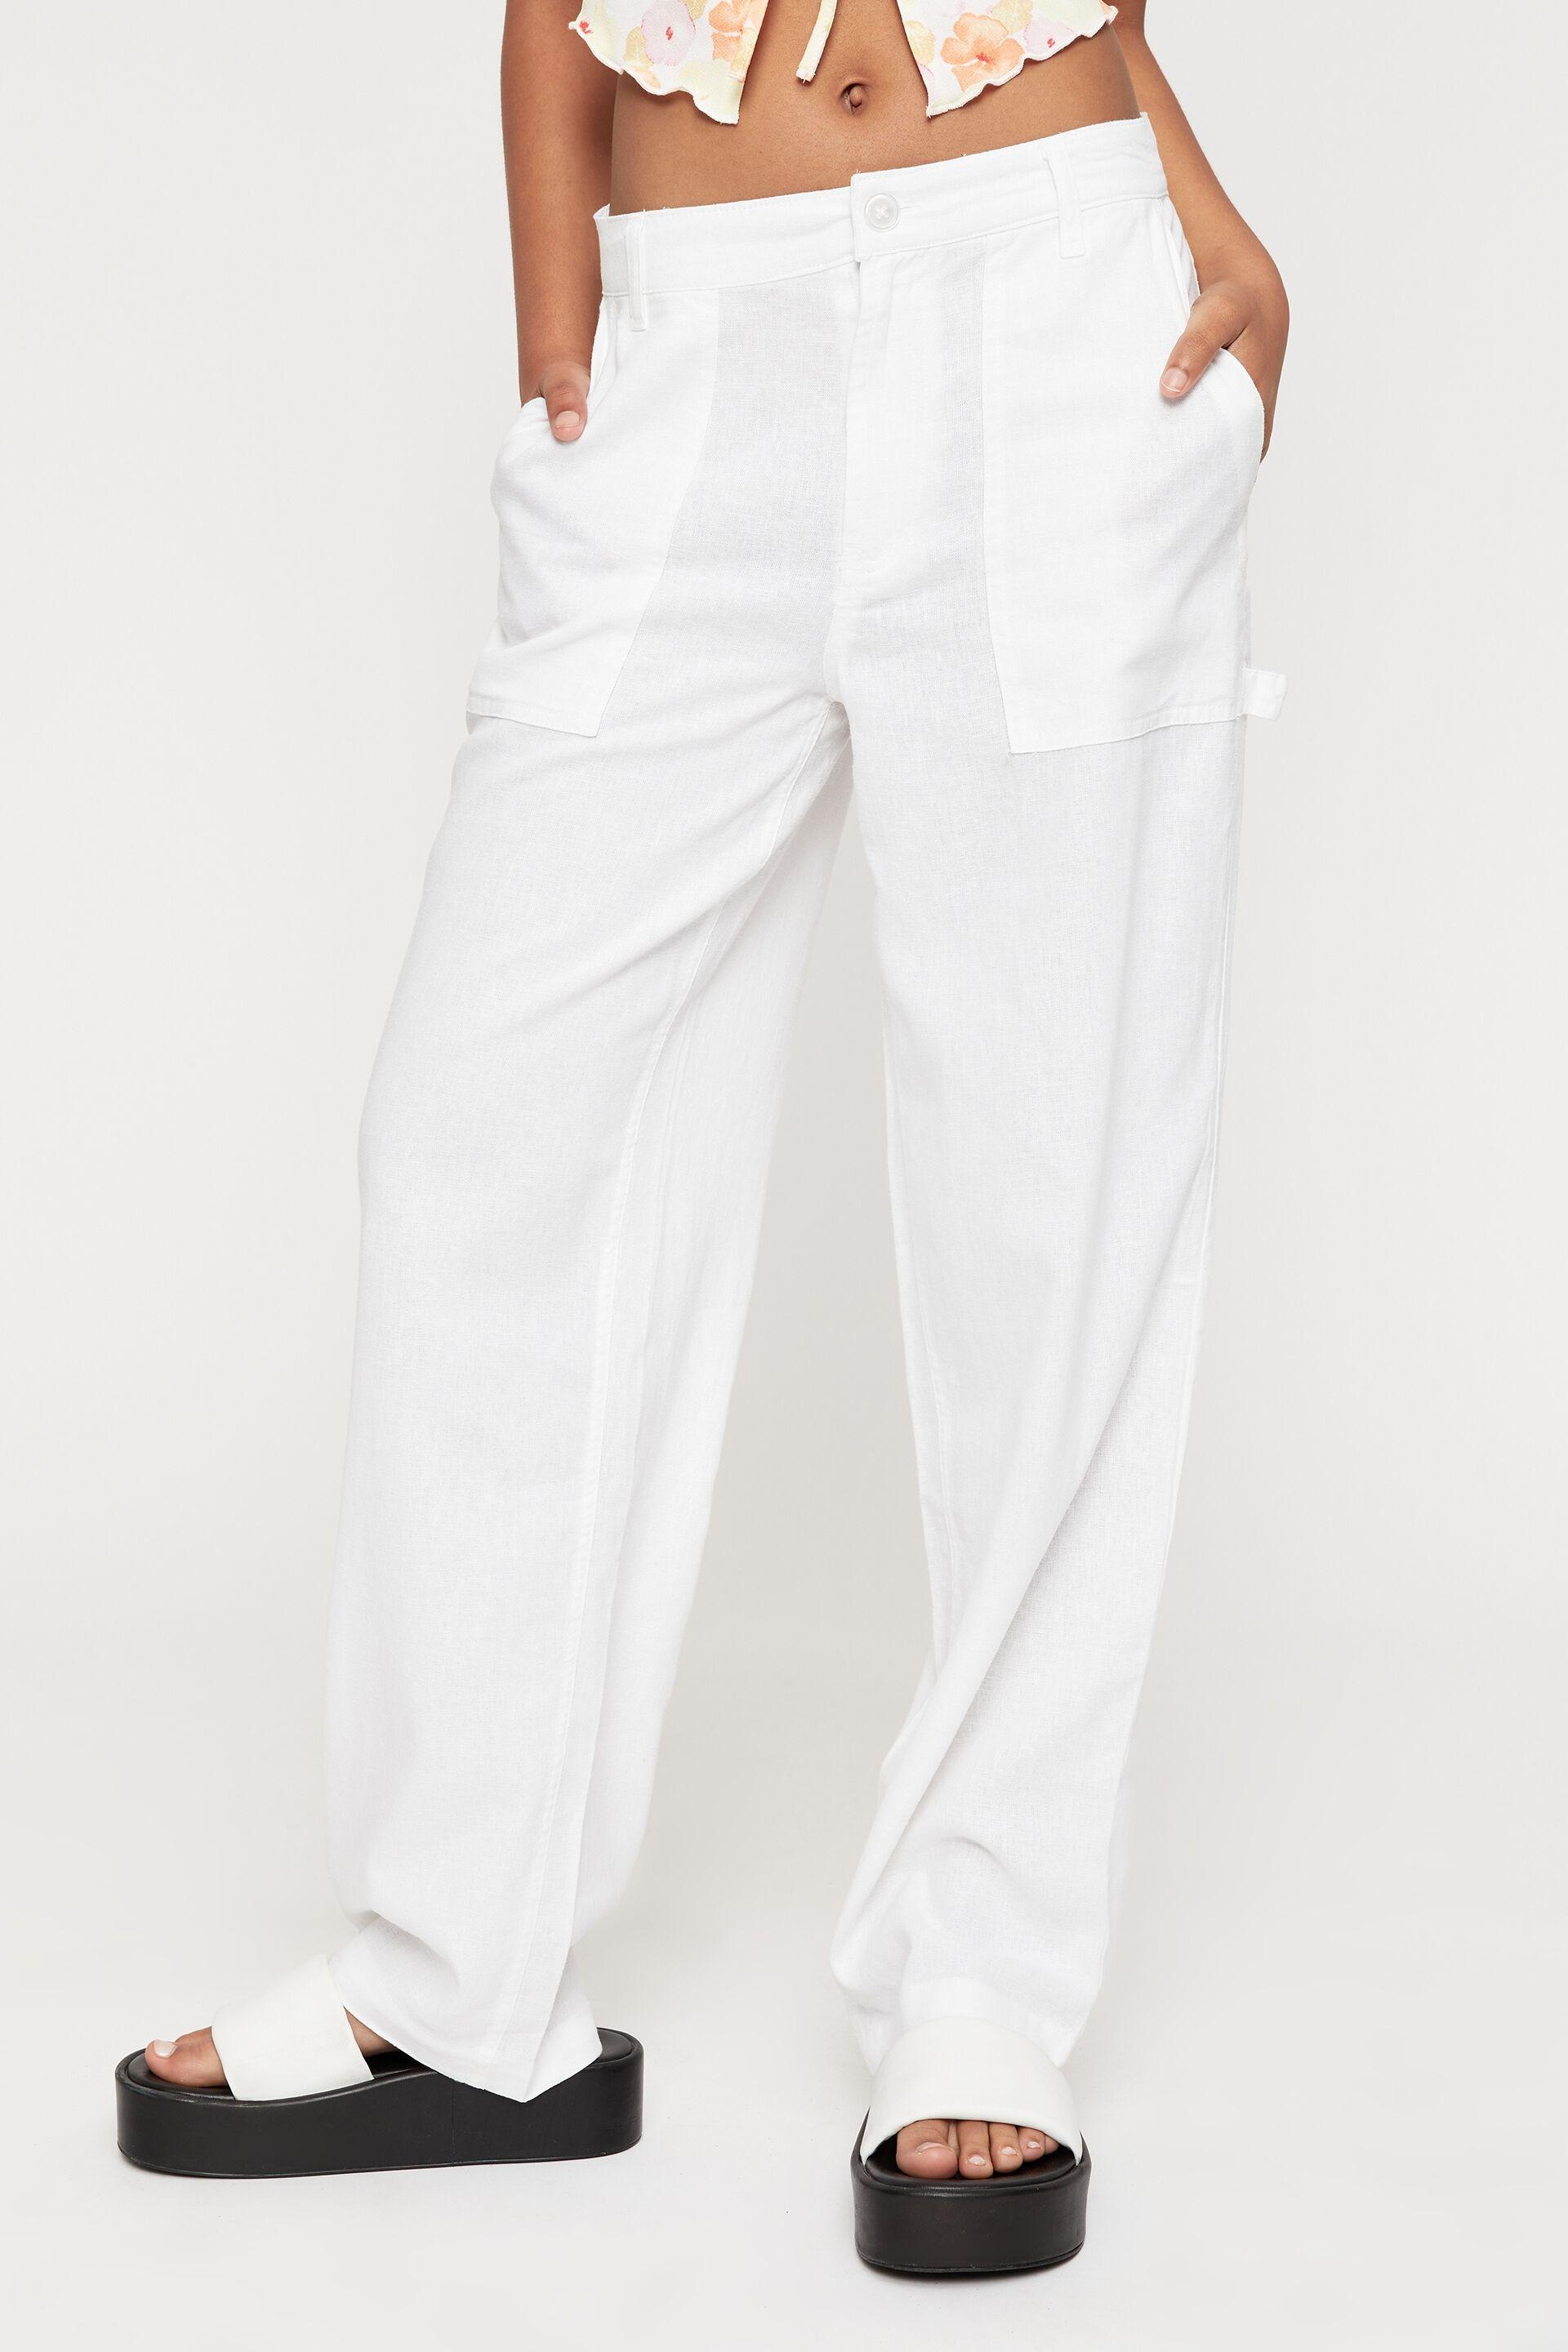 Candace linen cargo pant - white Supré Trousers | Superbalist.com